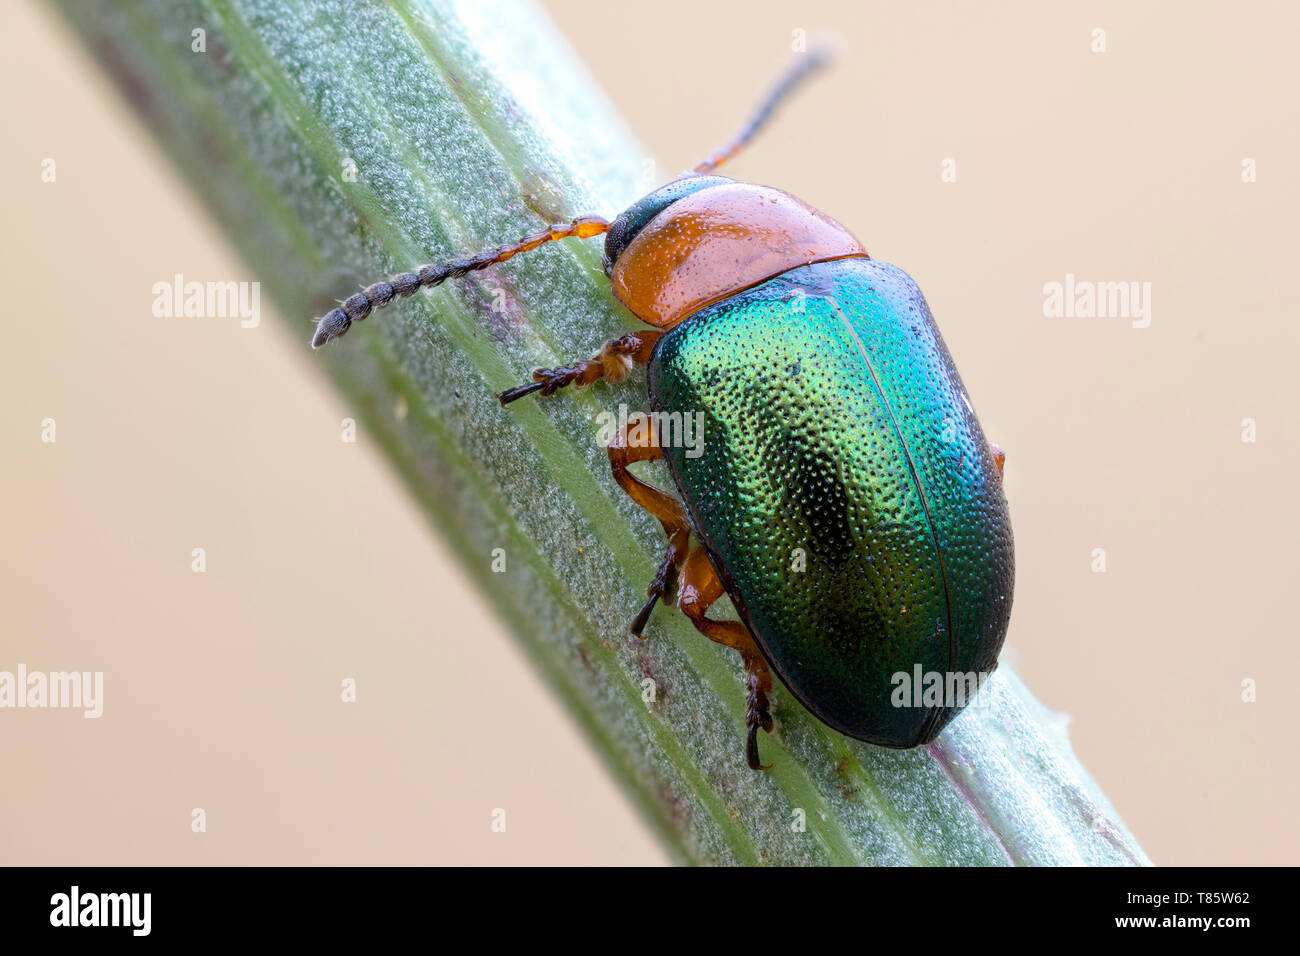 Leaf beetle Stock Photo